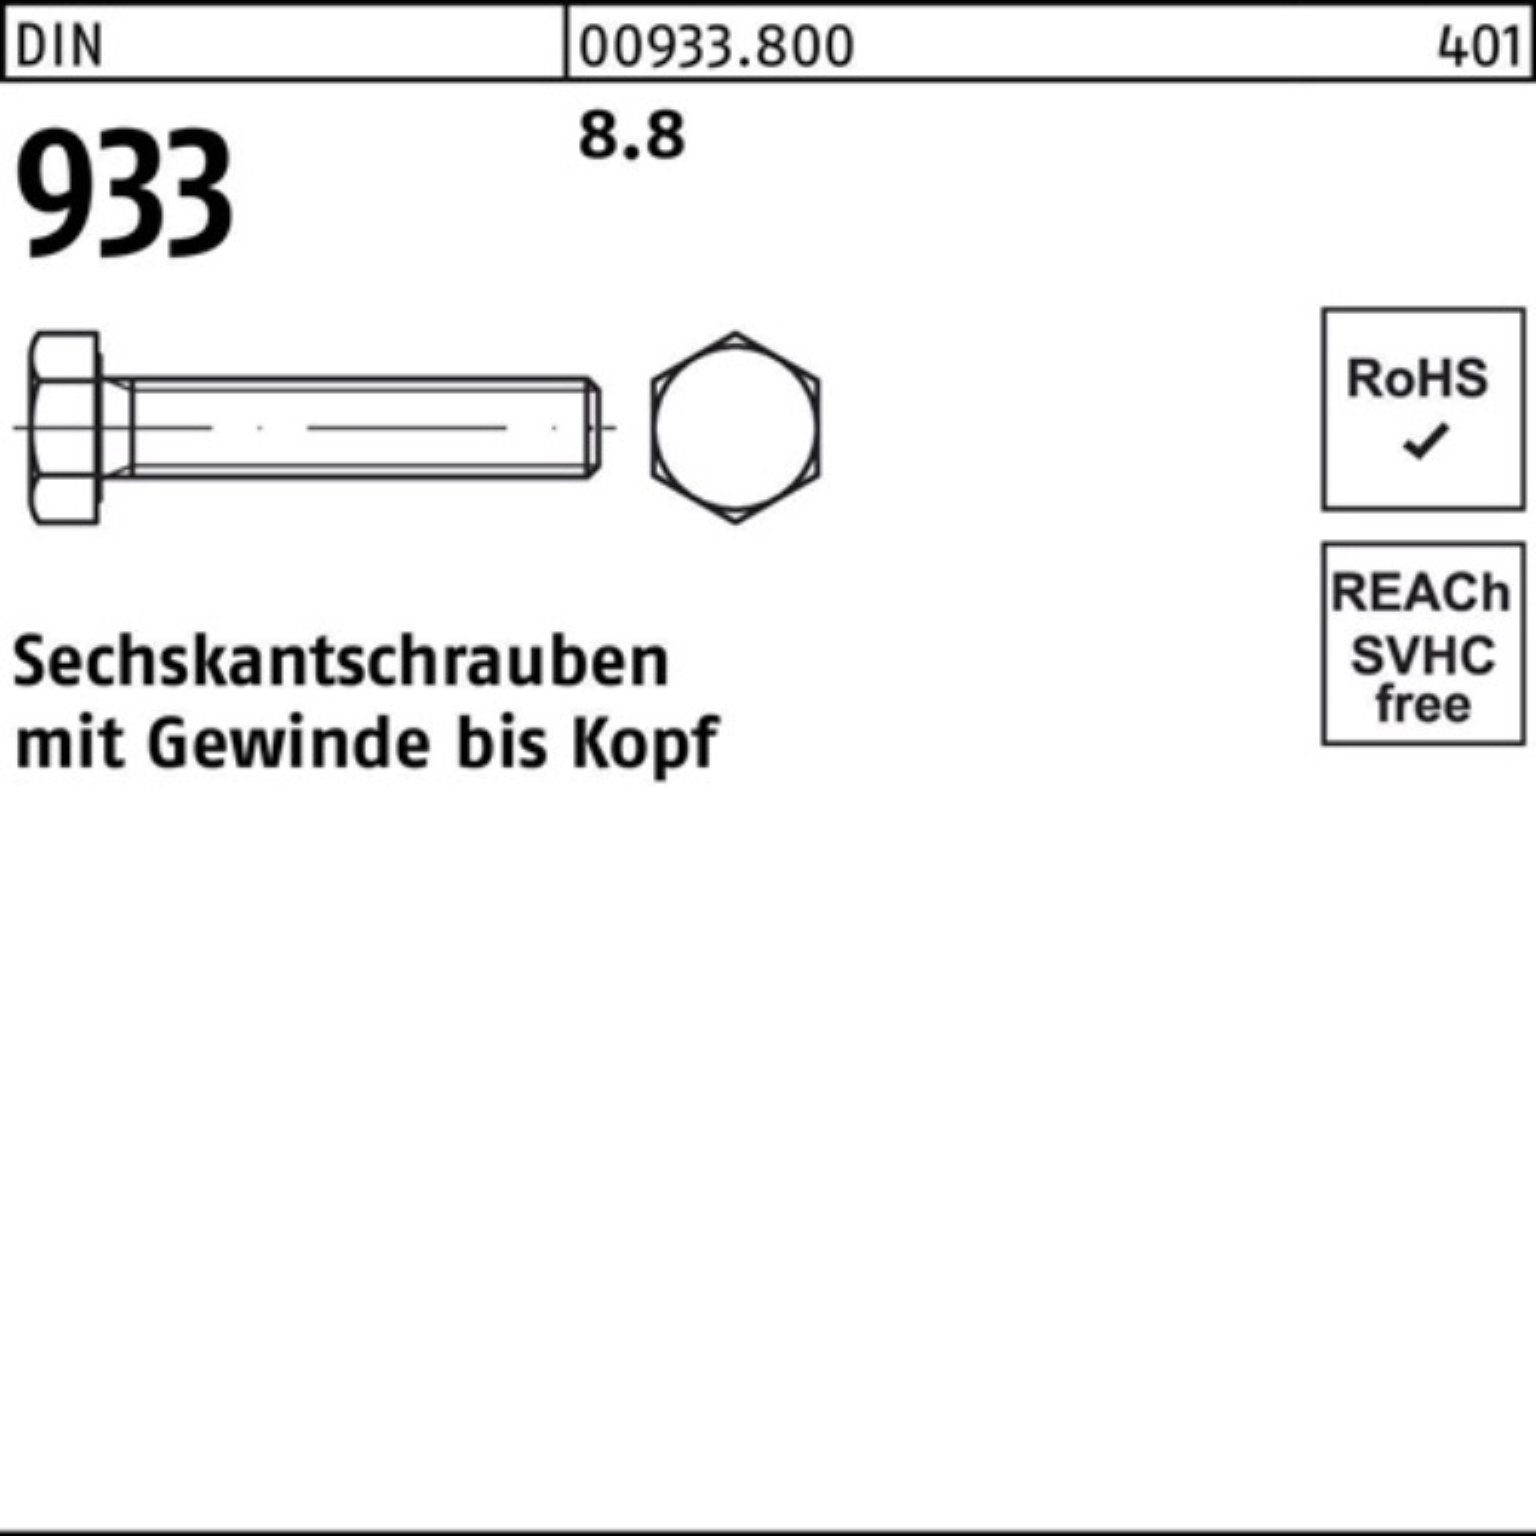 Sechskantschraube DIN 8.8 DIN Sechskantschraube M8x 933 100er 100 90 VG Stück 933 Pack Reyher